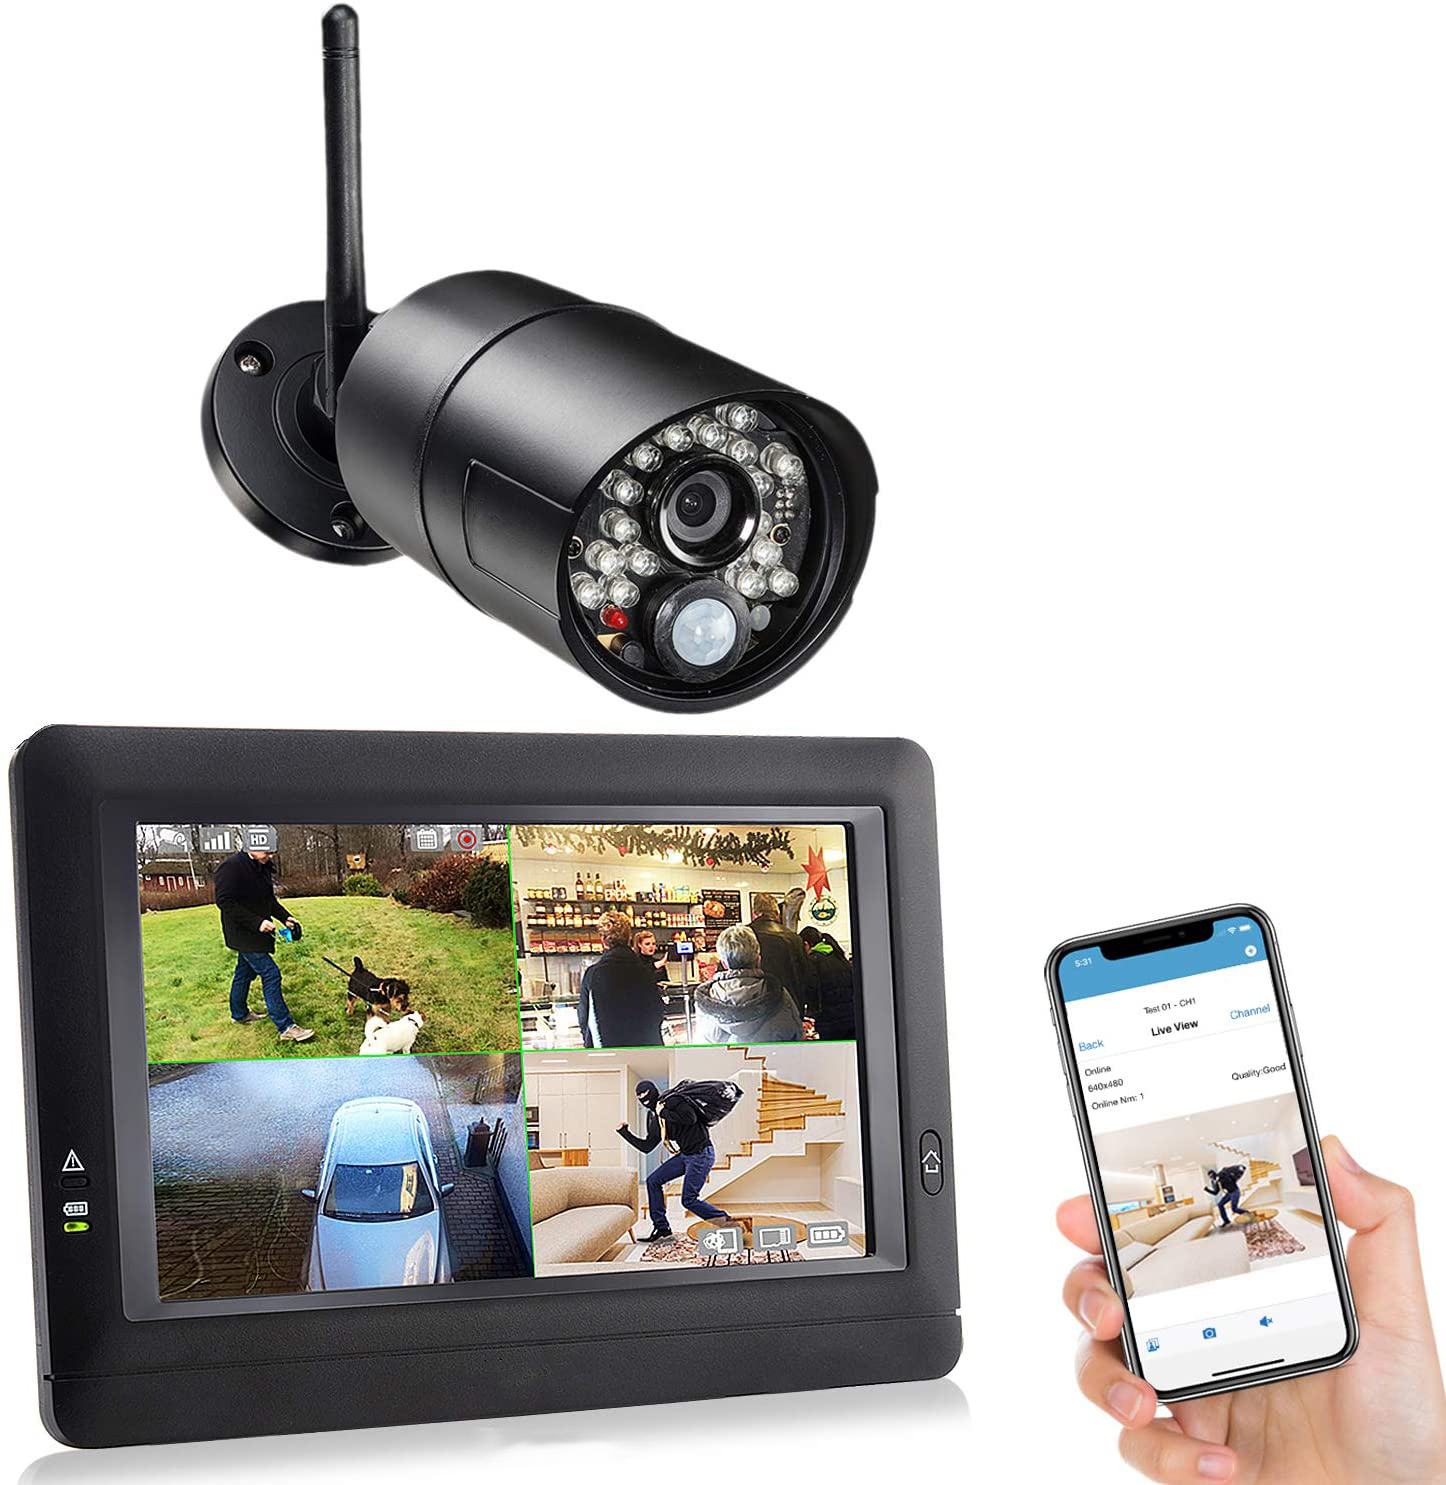 Kamera Bildschirm und Handy-Display zeigen Überwachungsaufnahmen